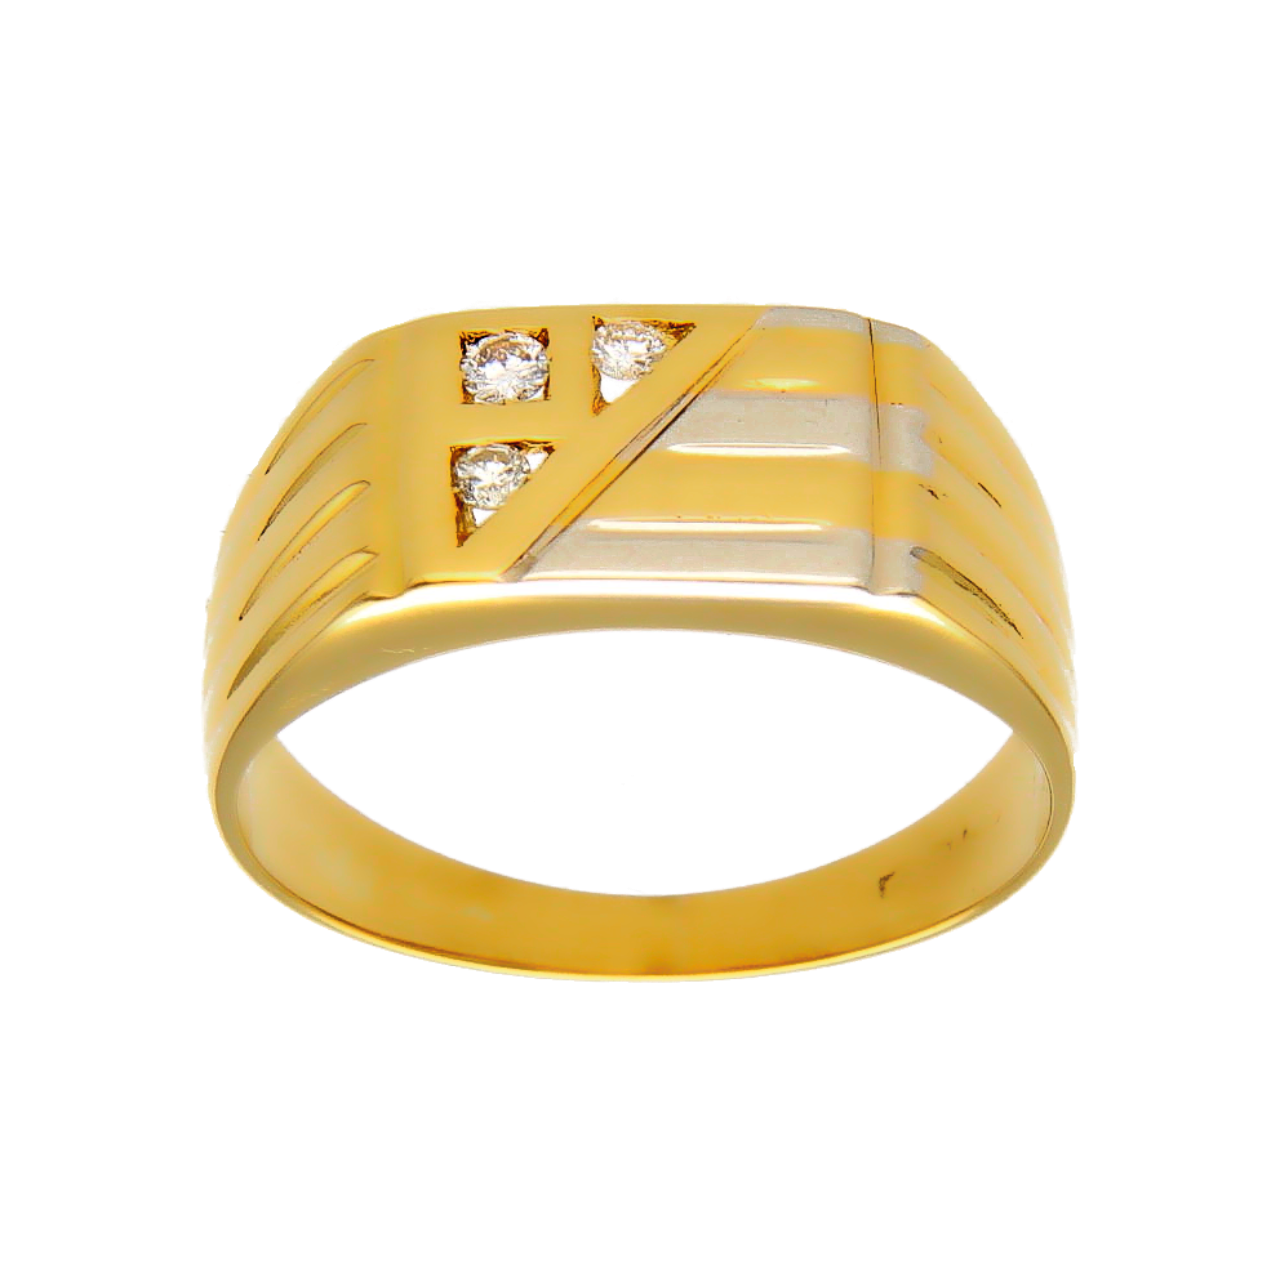 Anillo de oro amarillo y blanco con diamantes de 0.09 ct.